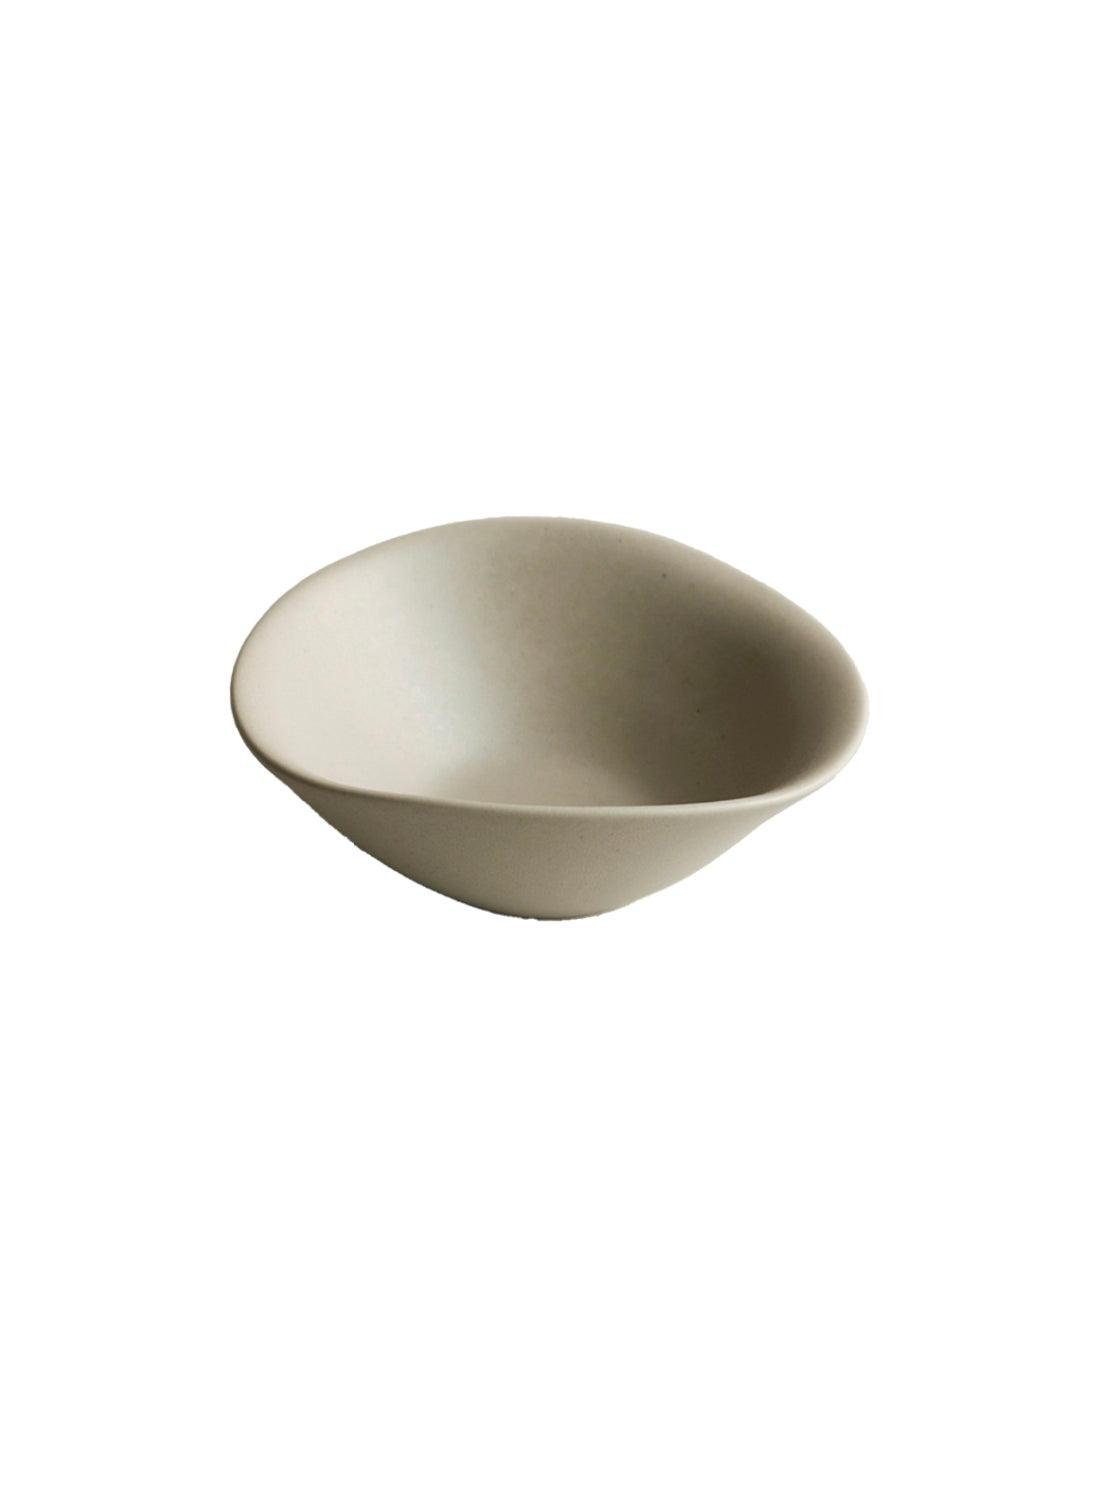 NR Ceramics Soup Bowl, soil beige